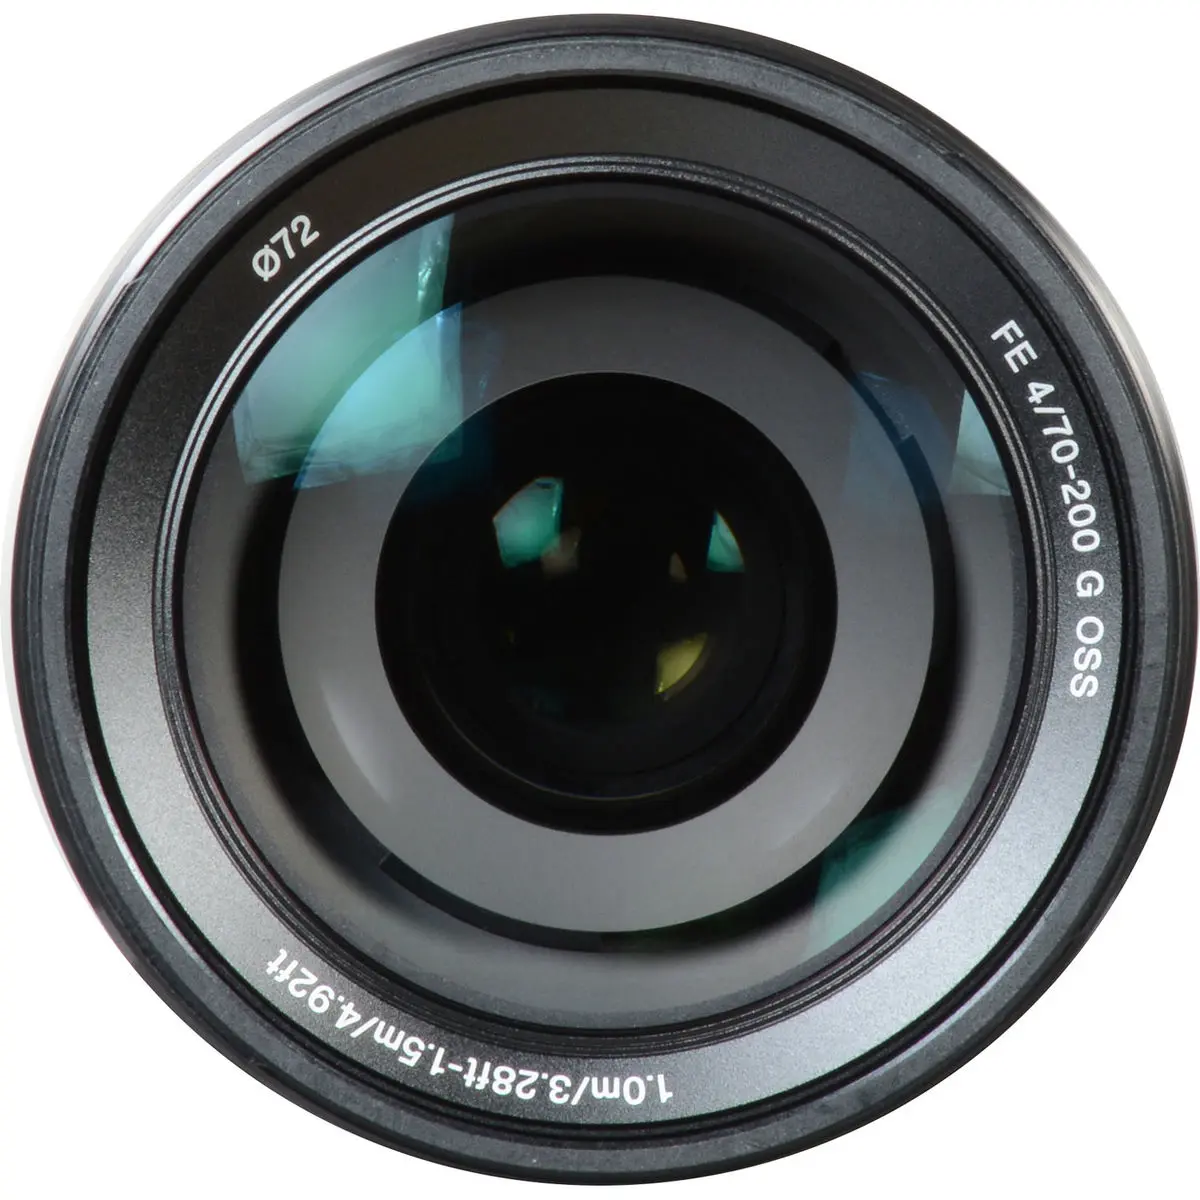 8. Sony FE 70-200mm F4.0 F4 G OSS E-Mount Full Frame Lens